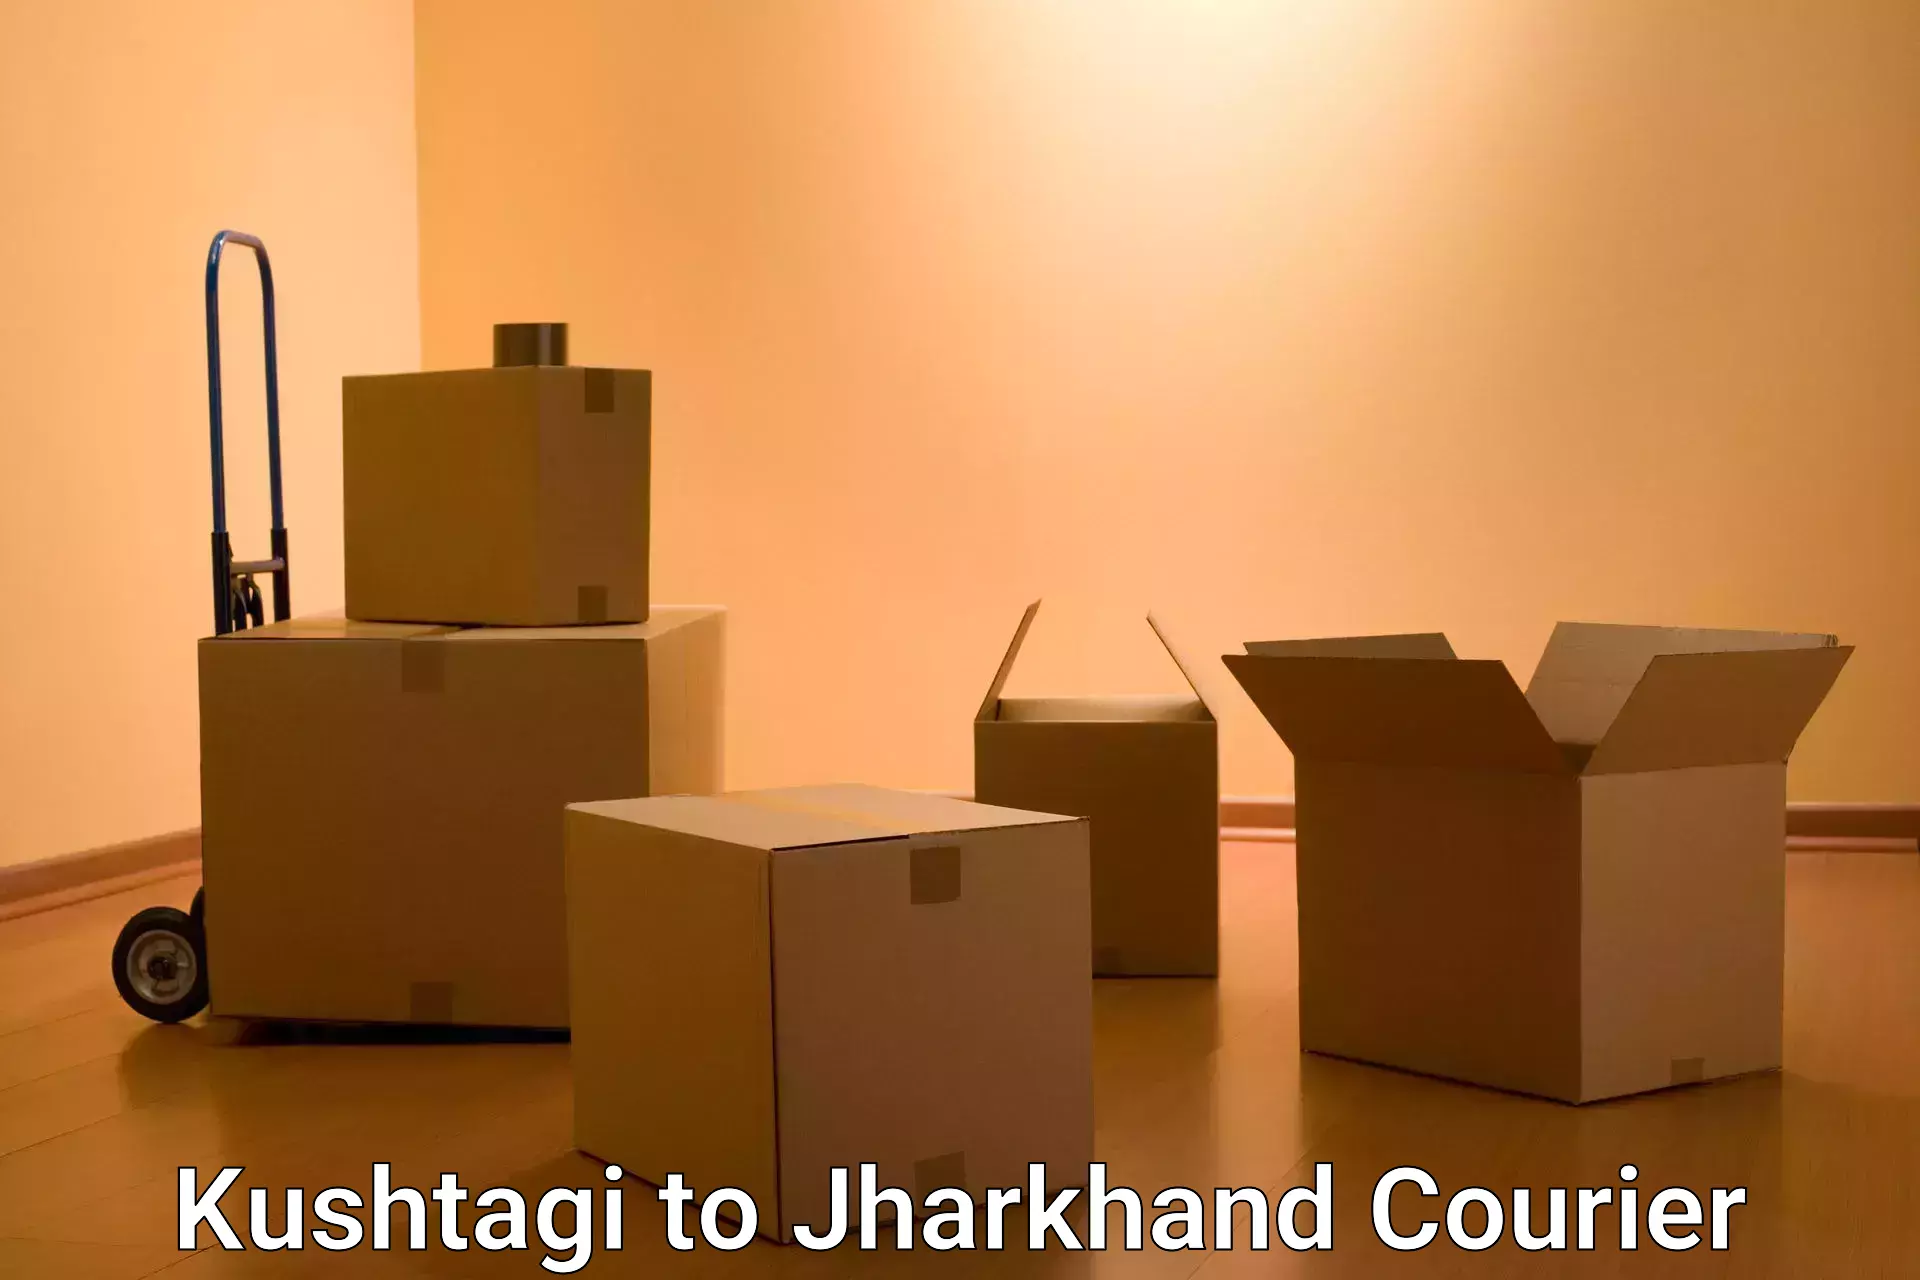 Urgent courier needs Kushtagi to Jharkhand